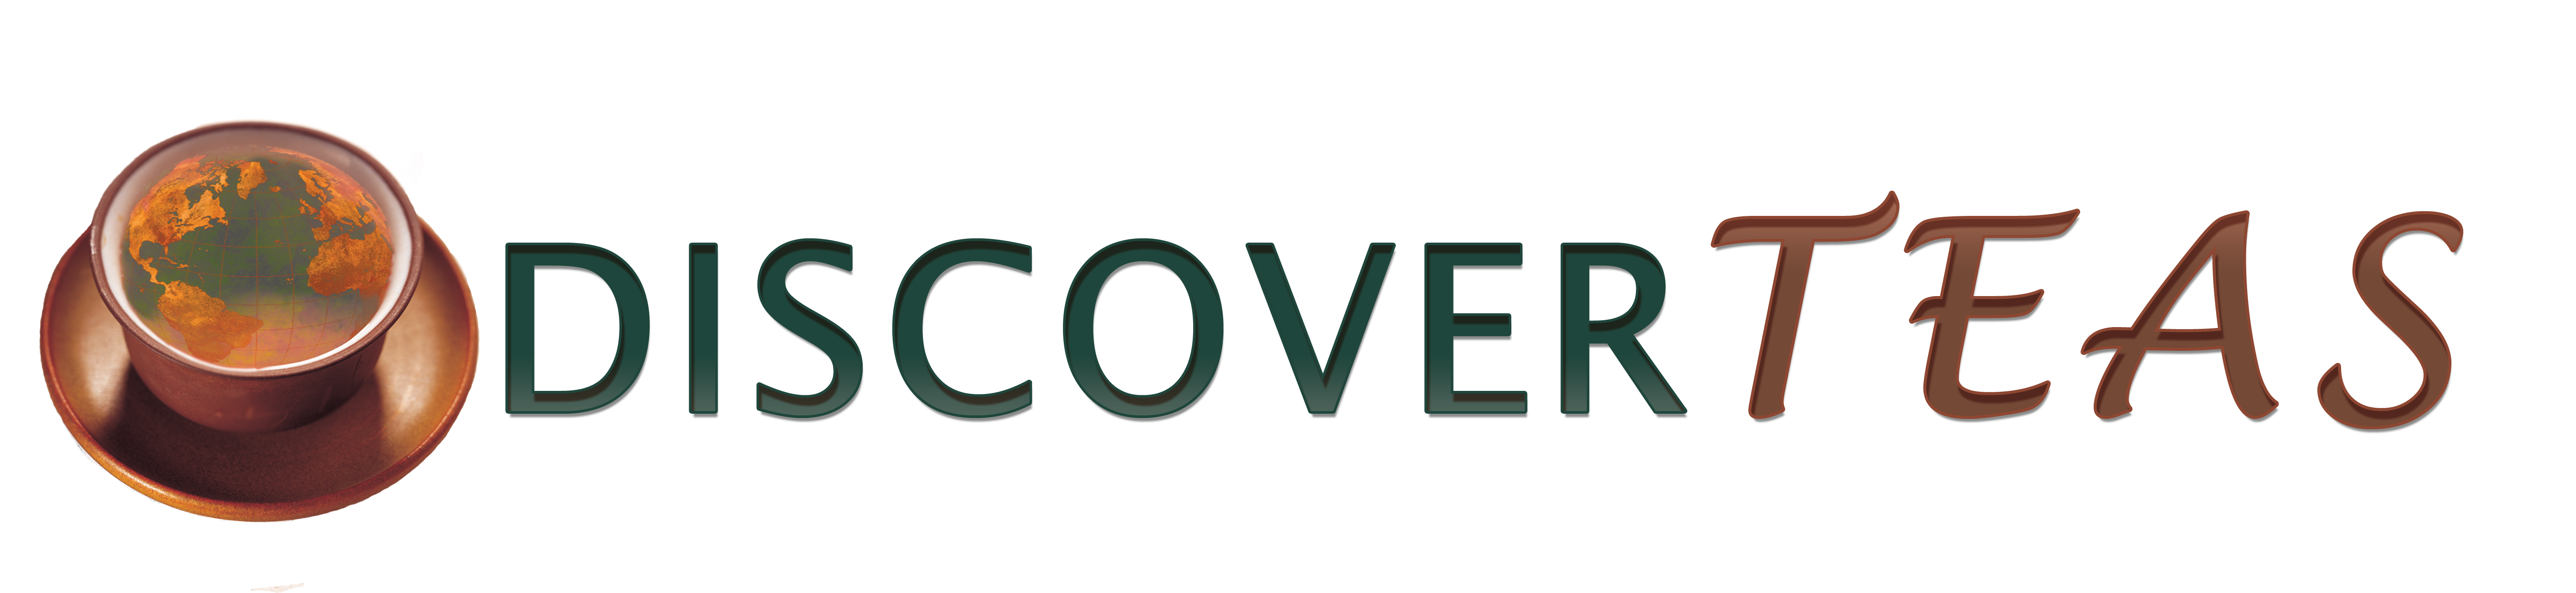 Discover Teas logo